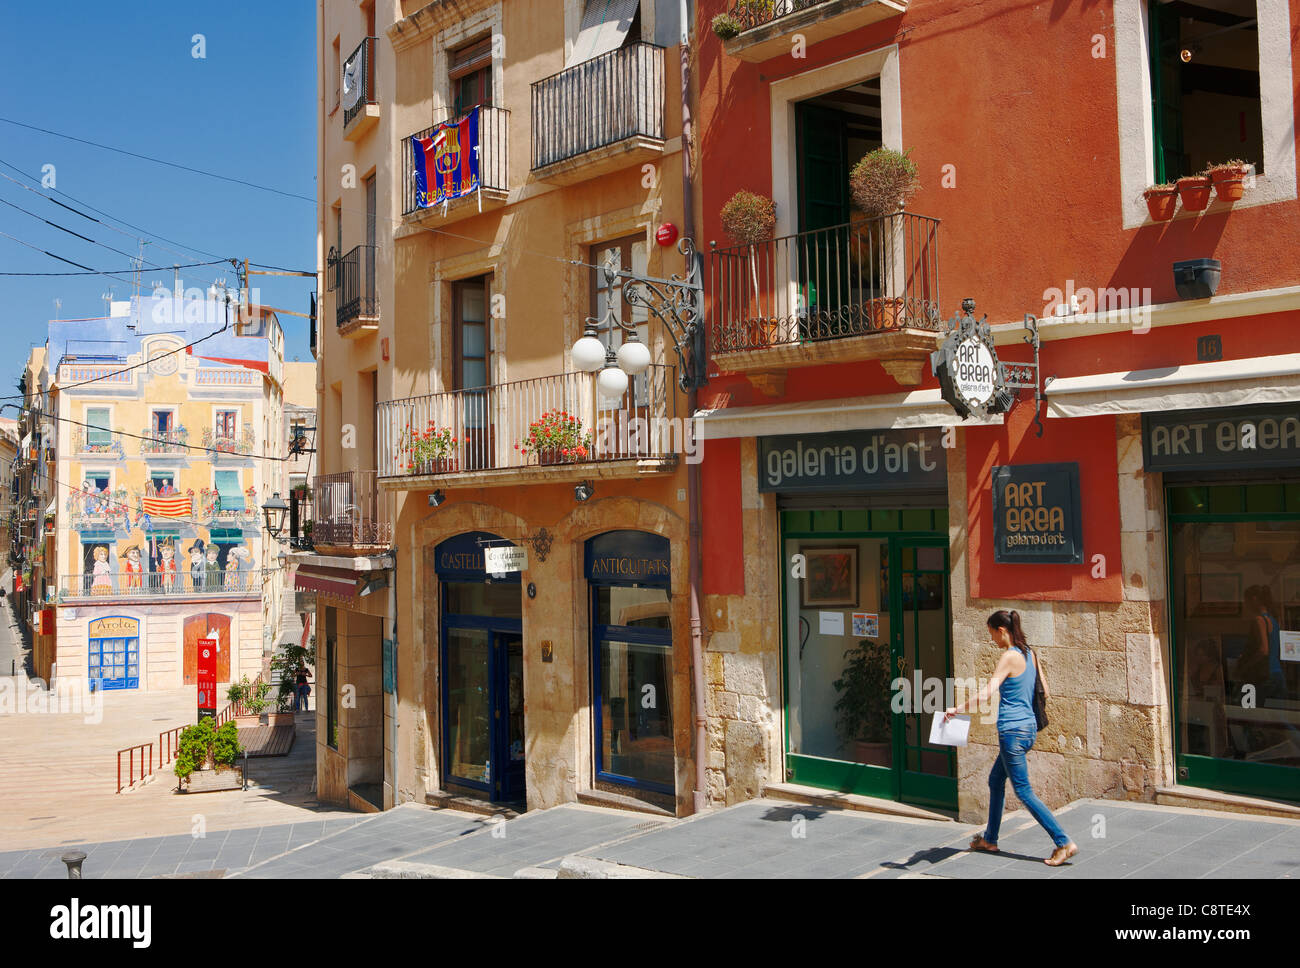 Les façades colorées des bâtiments dans la vieille ville. Tarragone, Catalogne, Espagne. Banque D'Images